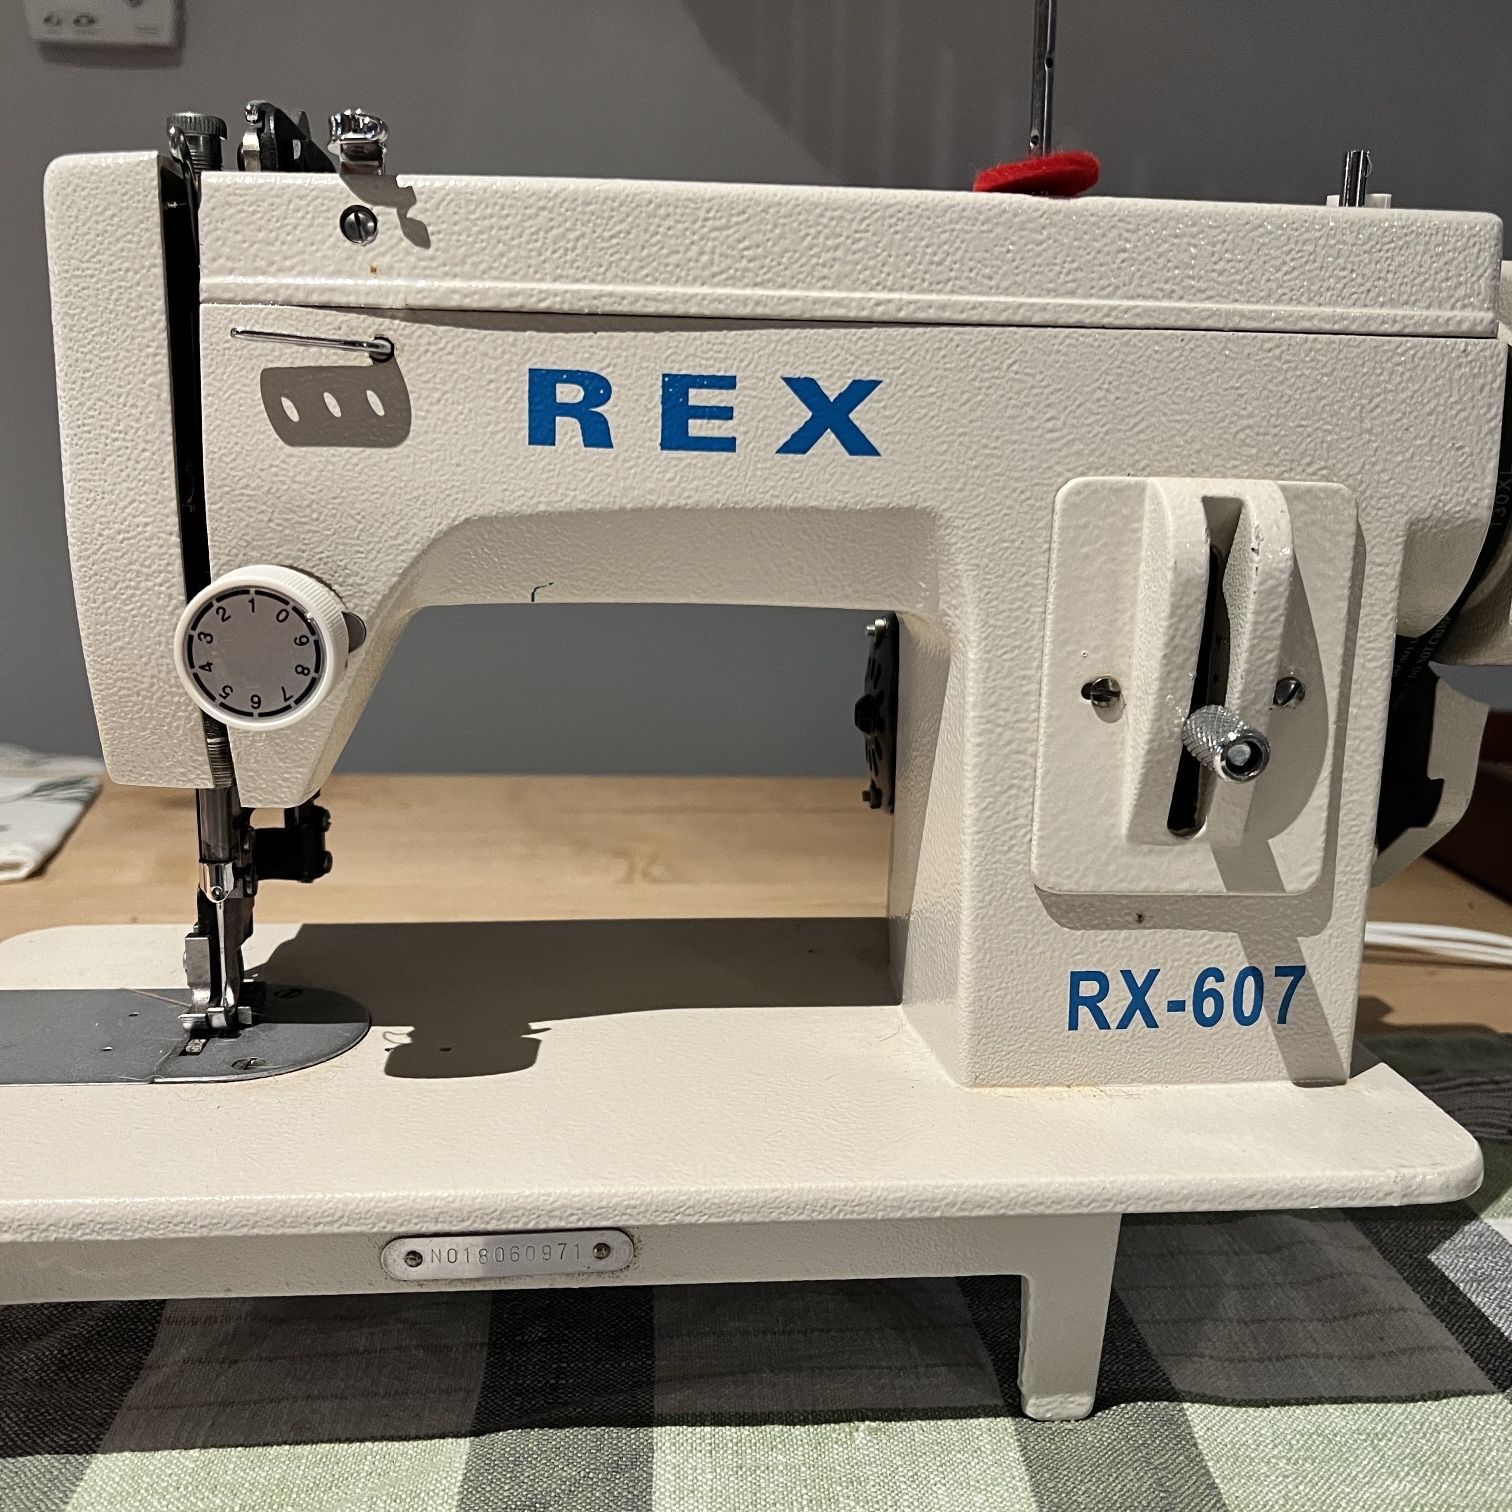 REX-607 Heavy duty walking foot sewing machine.